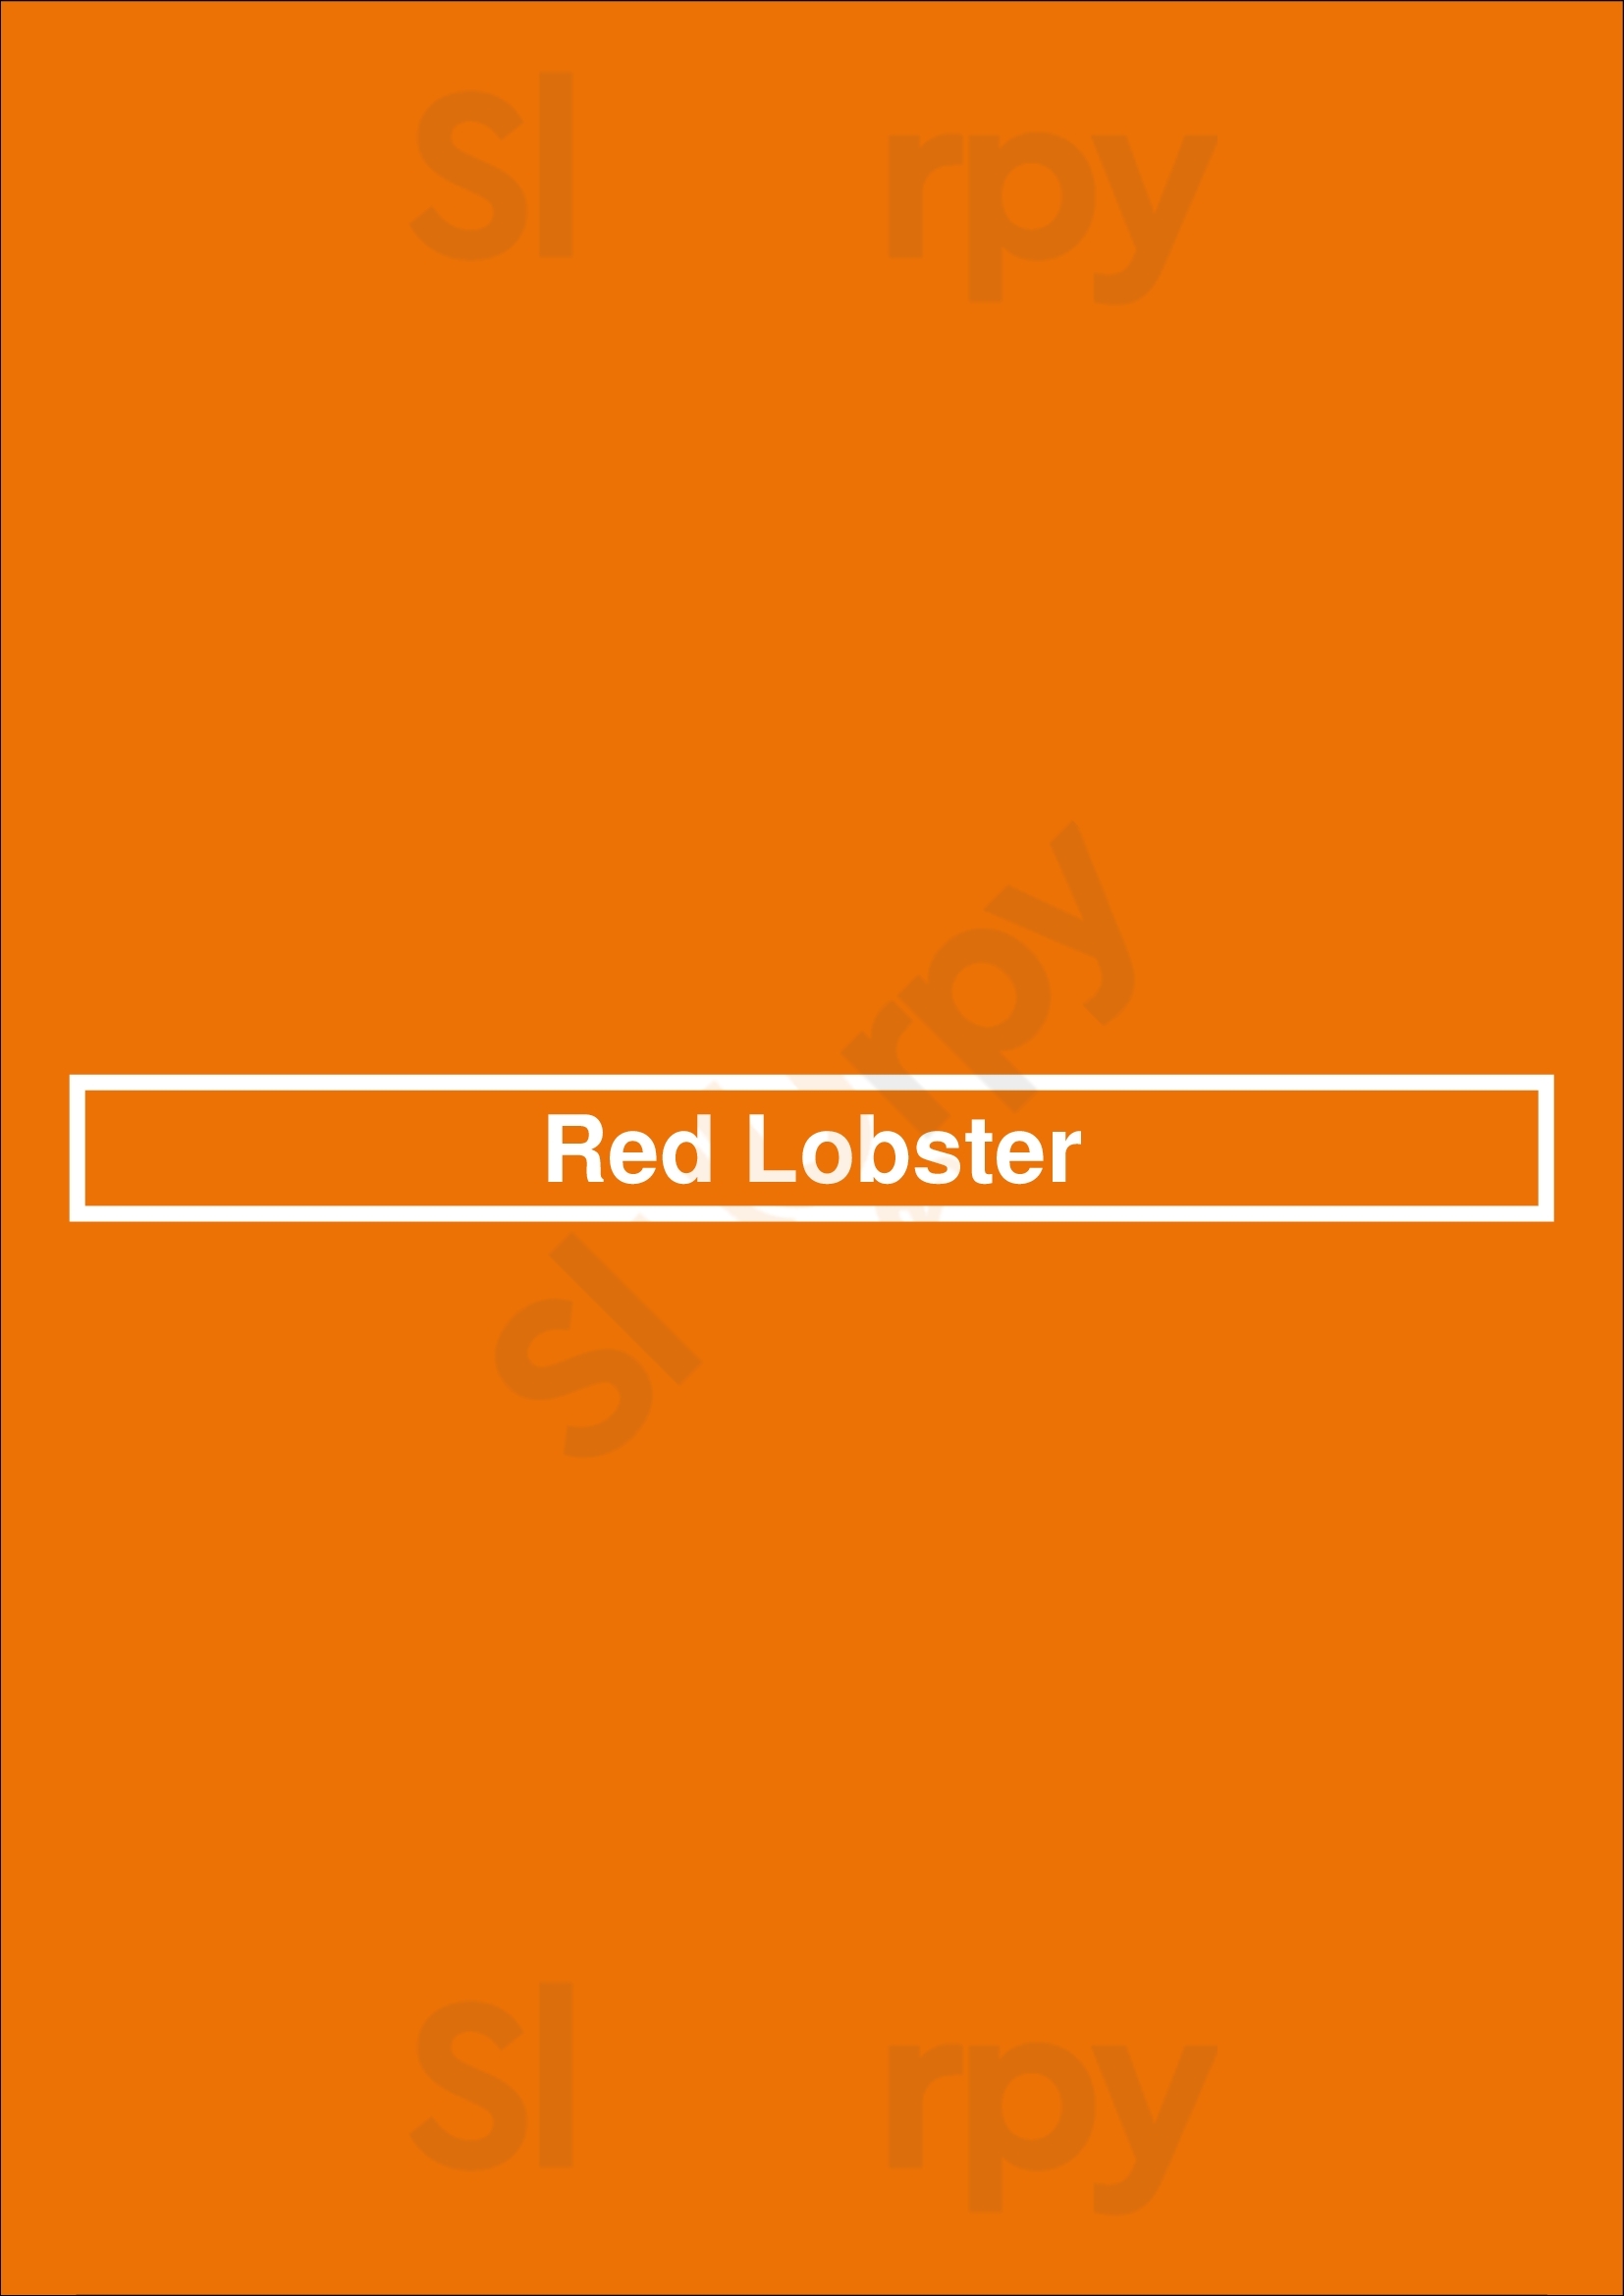 Red Lobster Greenwood Menu - 1